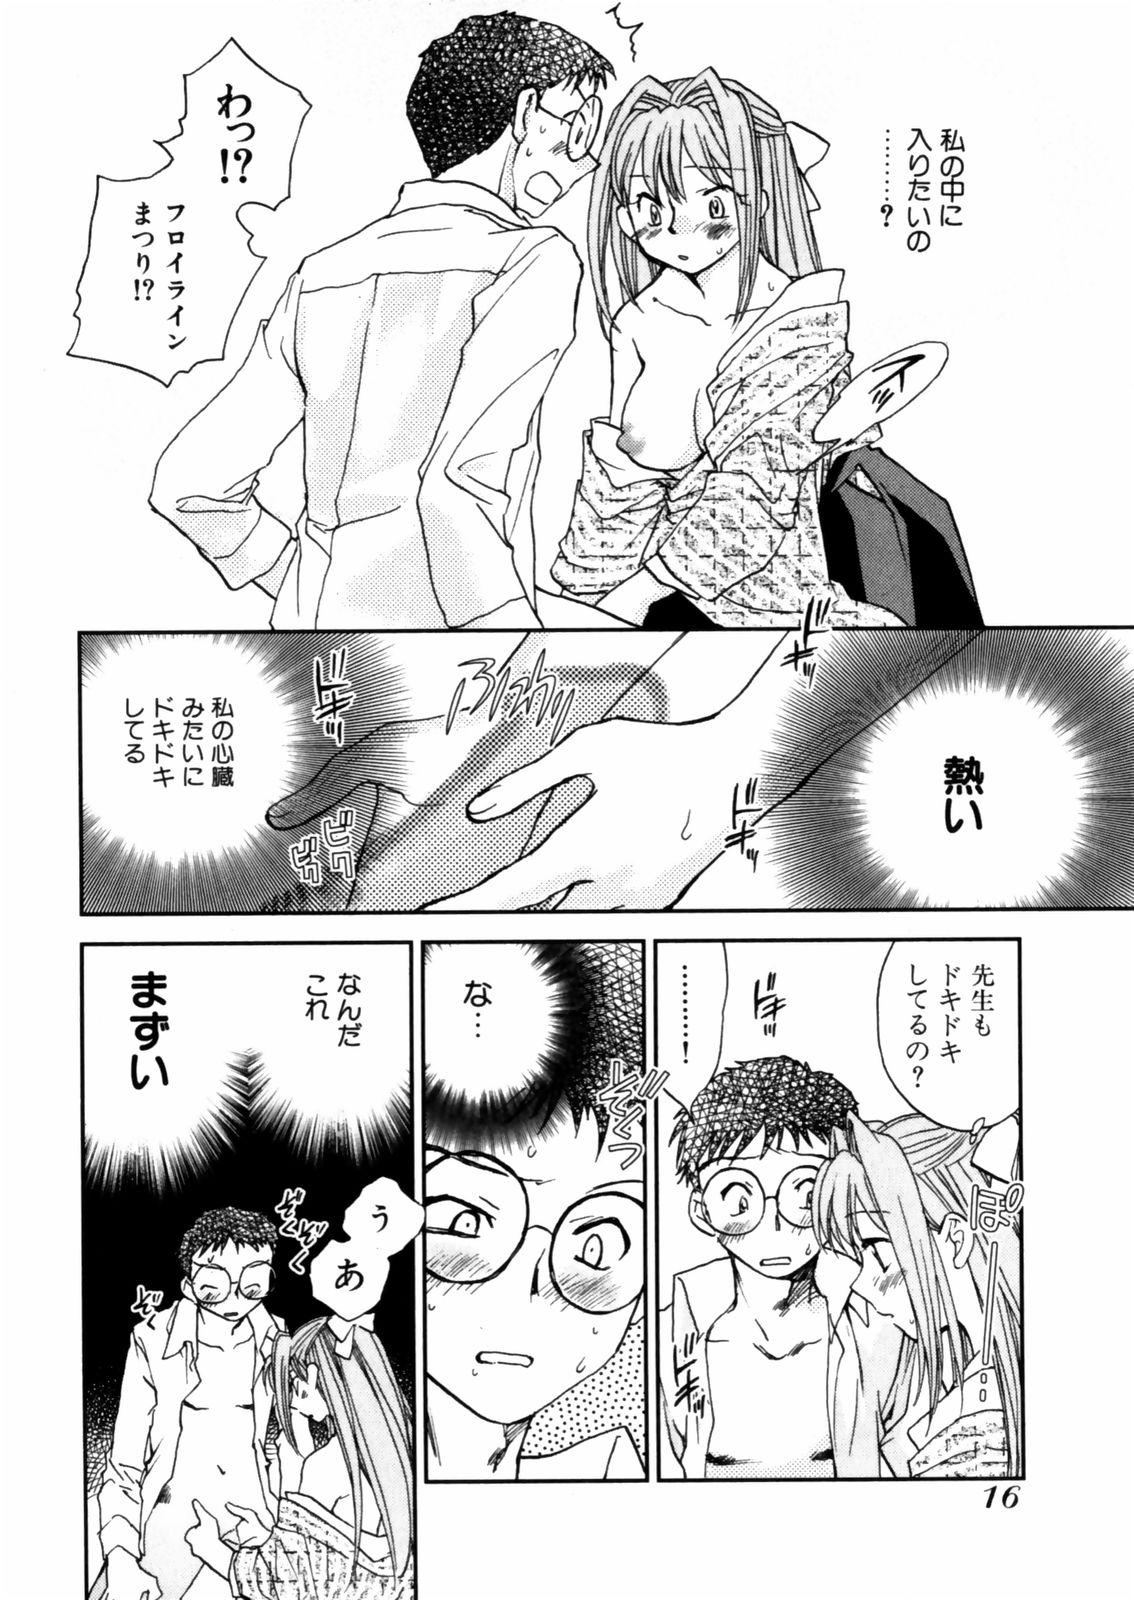 [Okano Ahiru] Hanasake ! Otome Juku (Otome Private Tutoring School) Vol.2 17